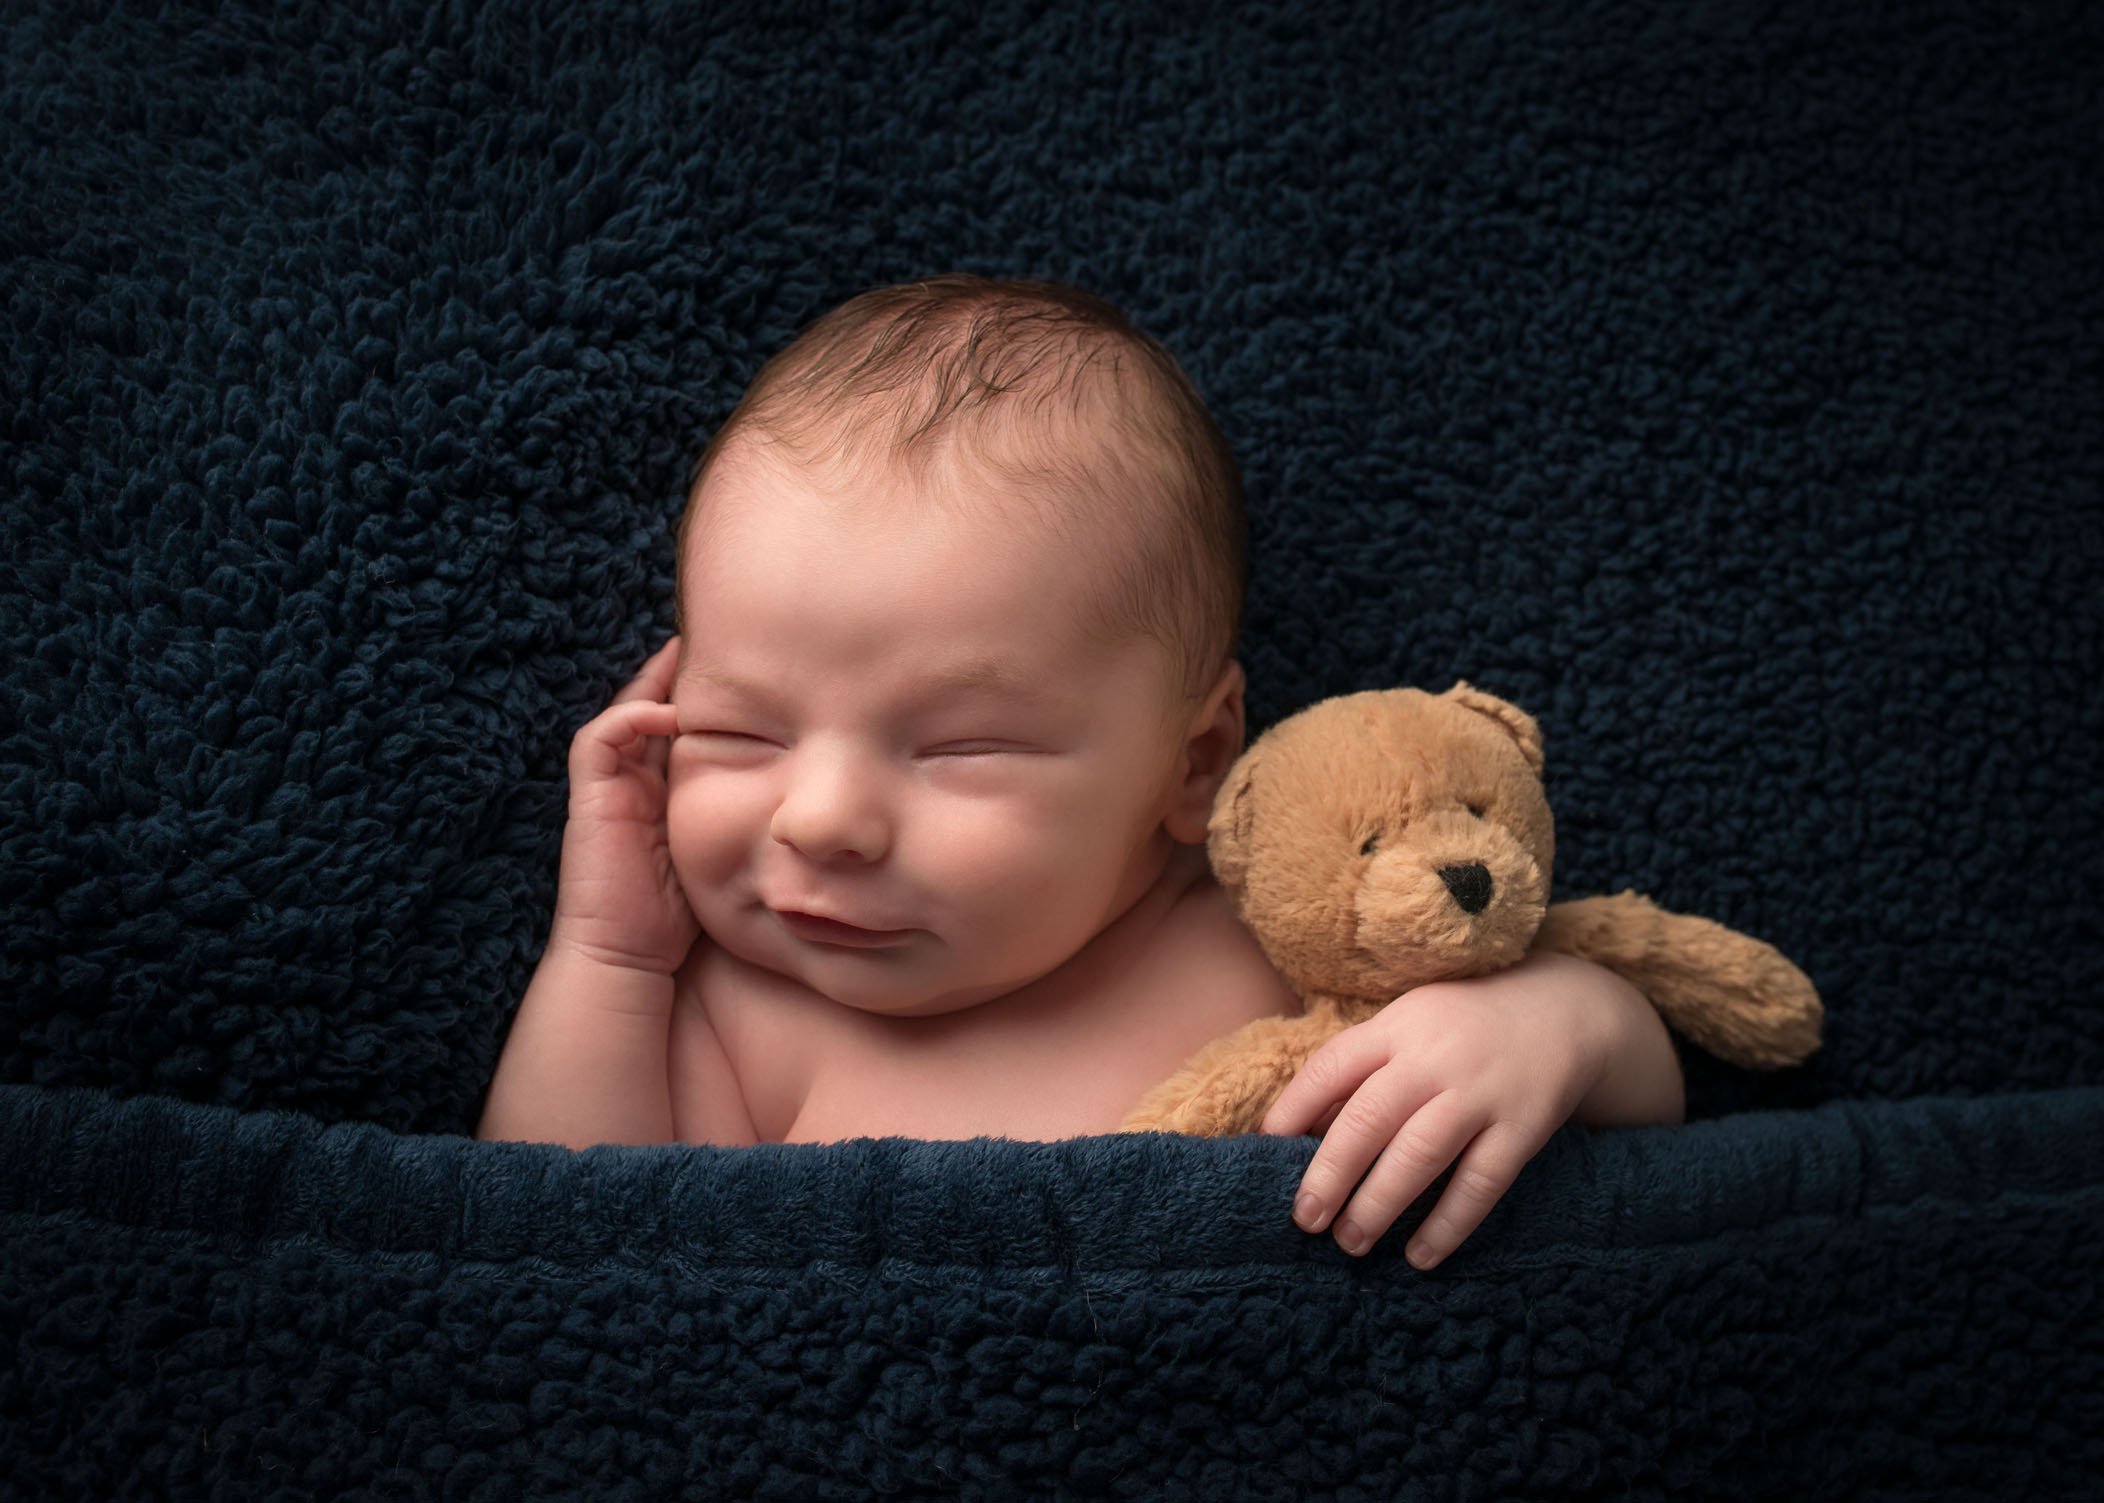 newborn boy smiling and sleeping with teddy bear